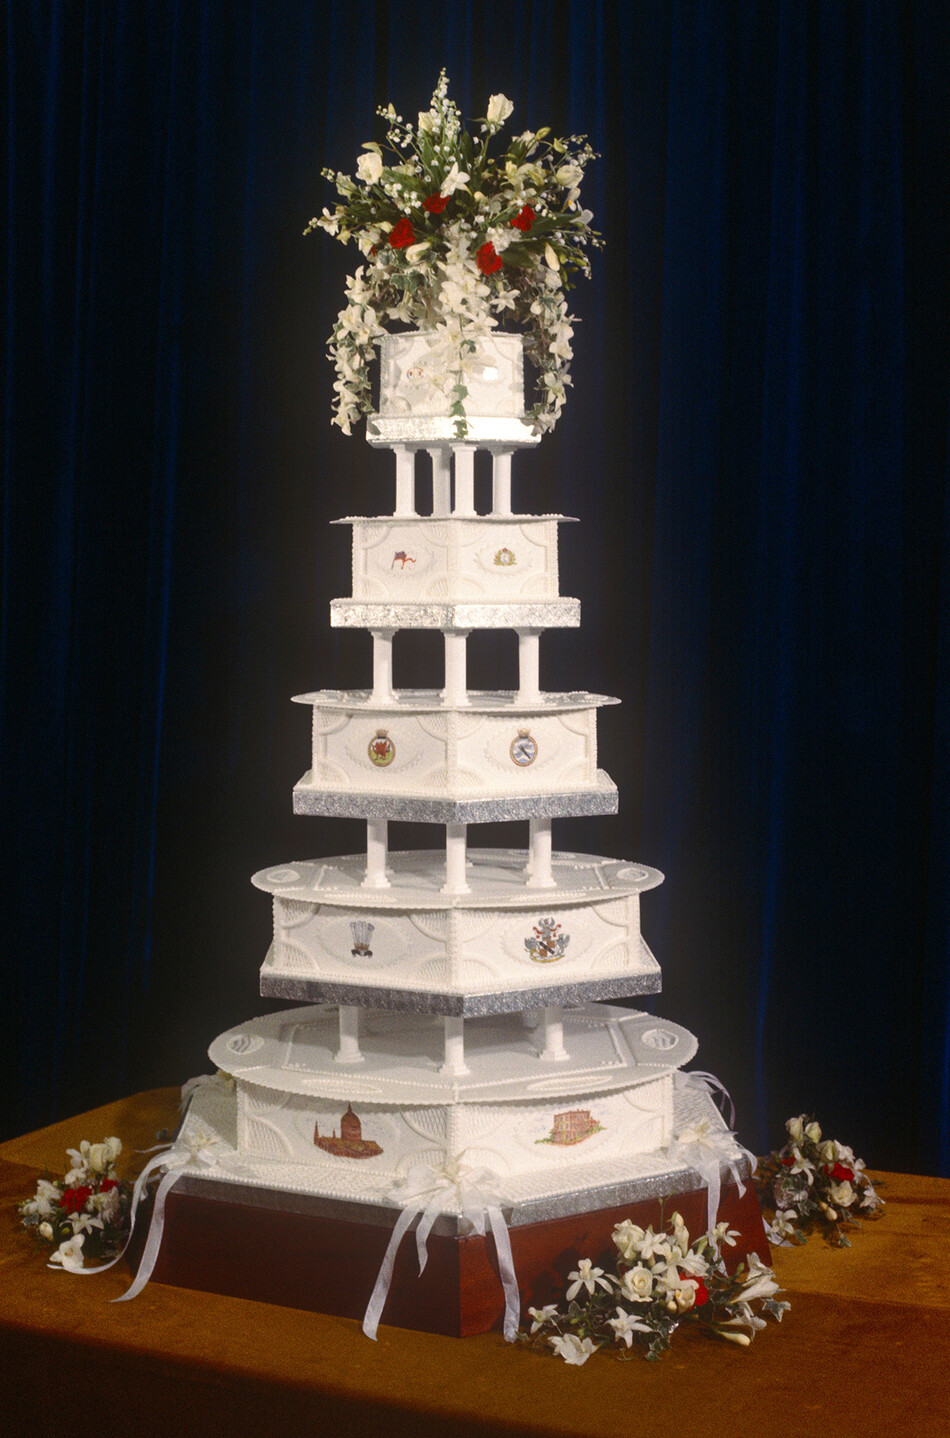 Свадебный торт на выставке на королевской свадьбе Чарльза и Дианы, 29 июля 1981 